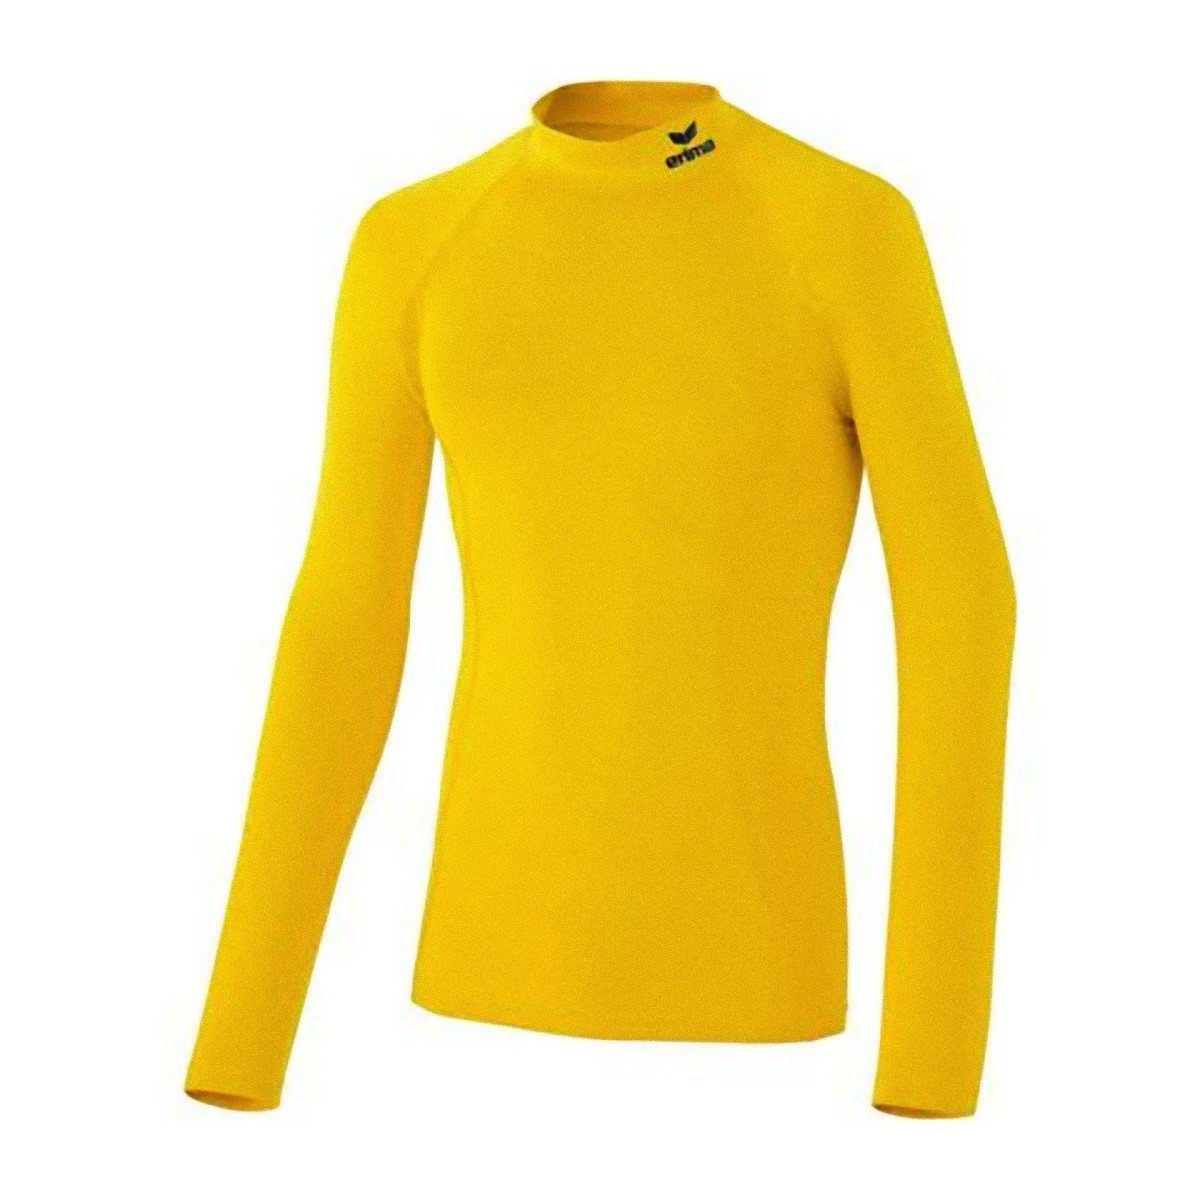 Erima Laufshirt Support Langarm Sportshirt Fussball Funktionsshirt Shirt Longsleeve Pullover Gelb